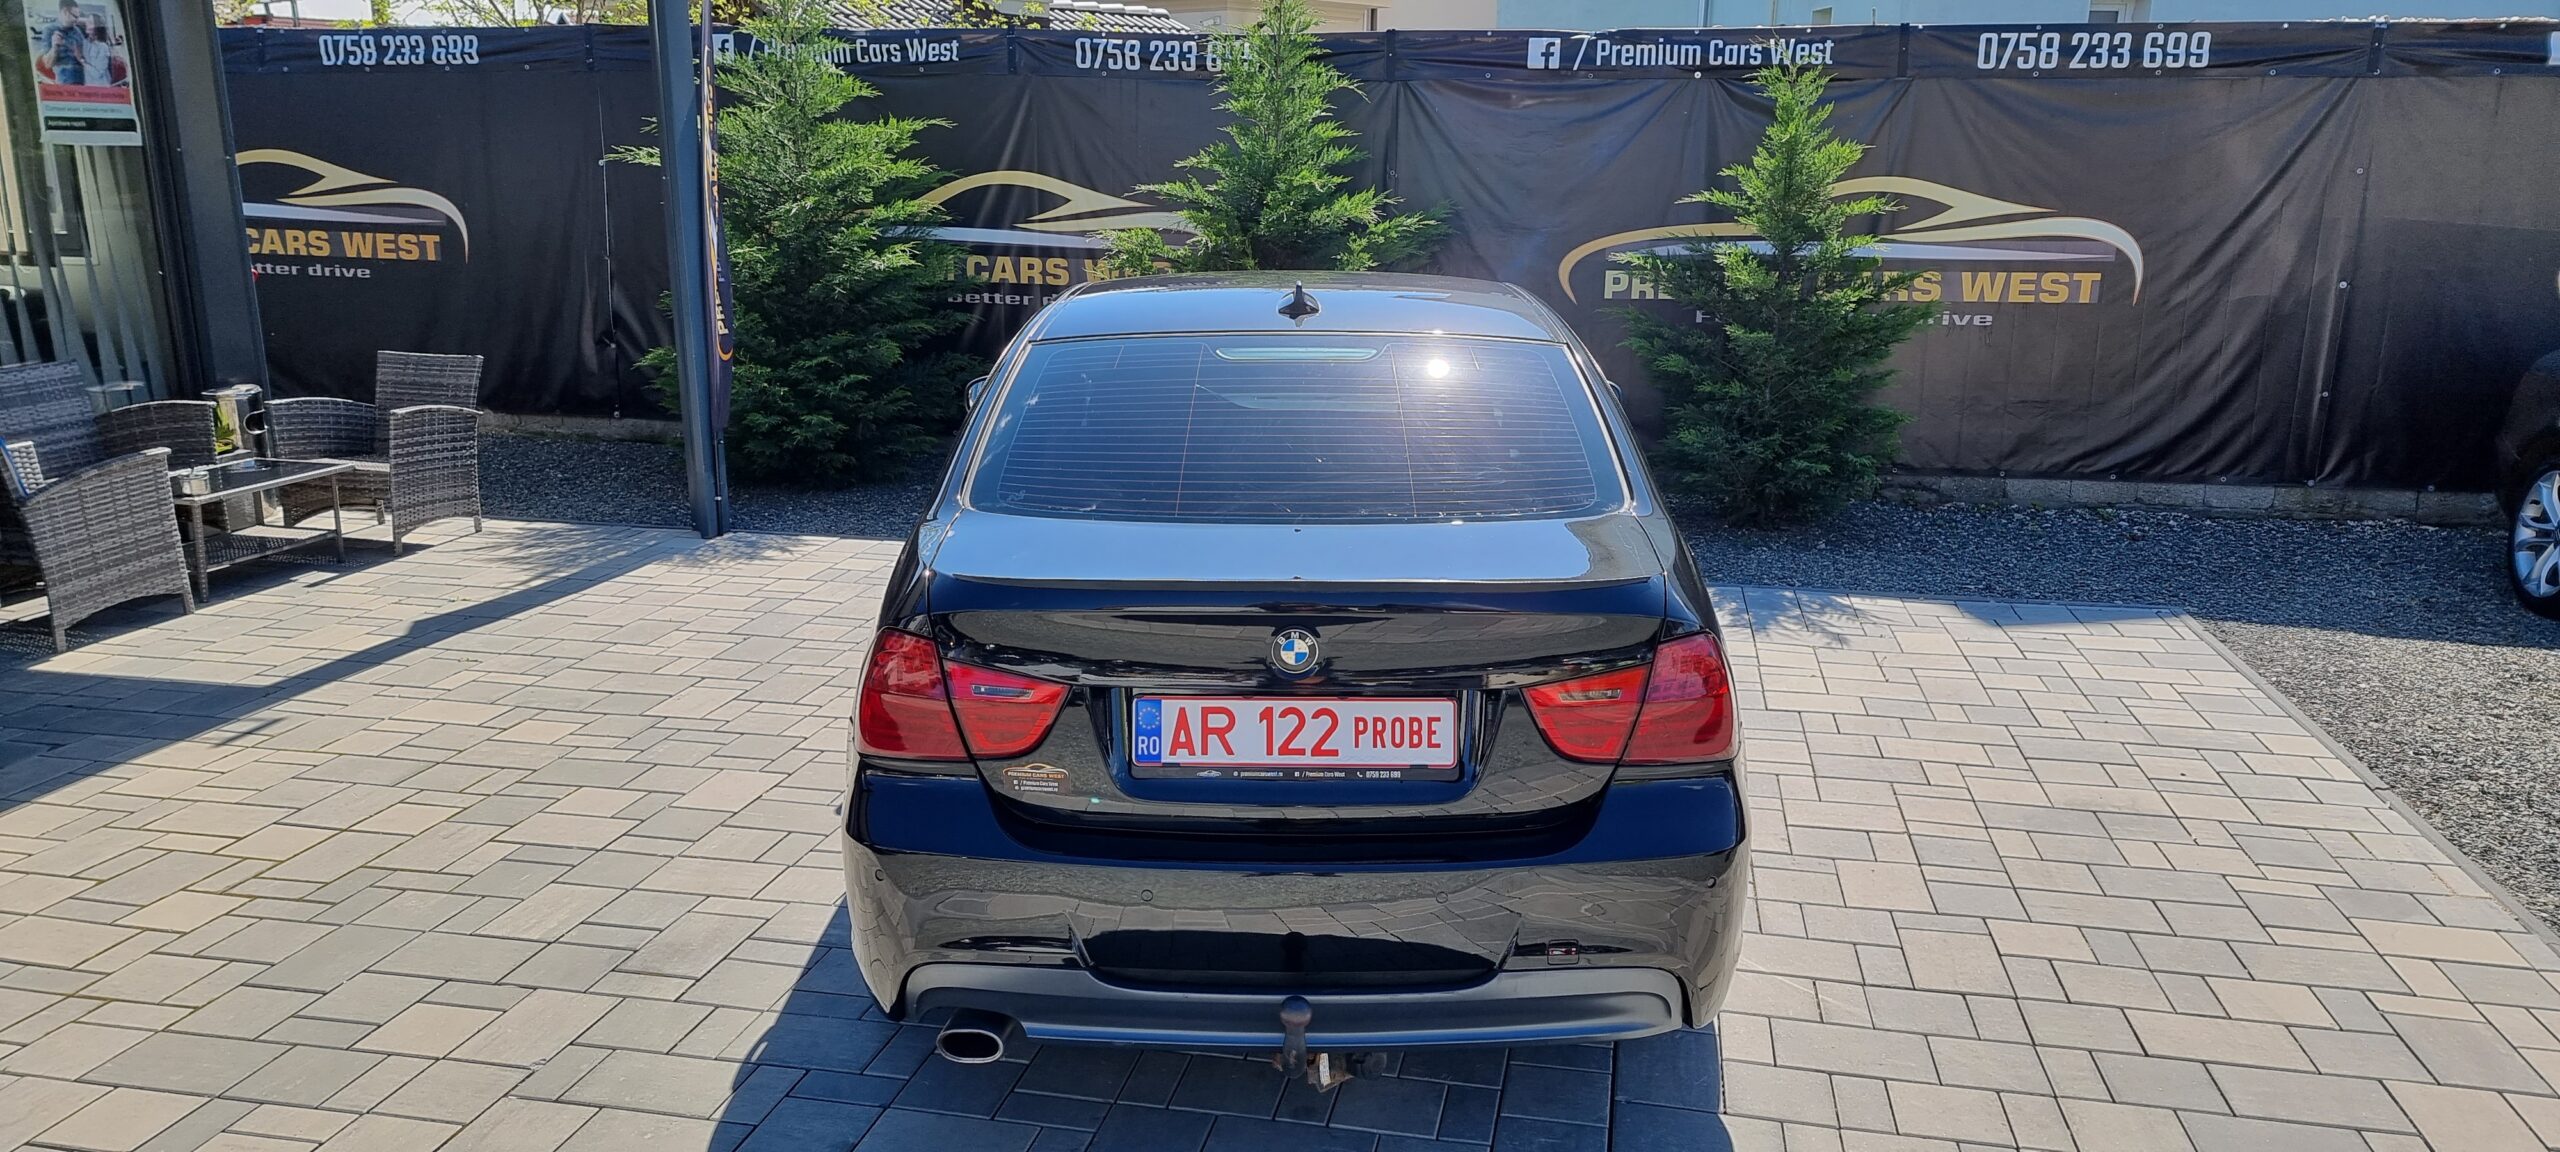 BMW SERIA 3, 2.0 DIESEL, 177 CP, EURO 5, AN 2008